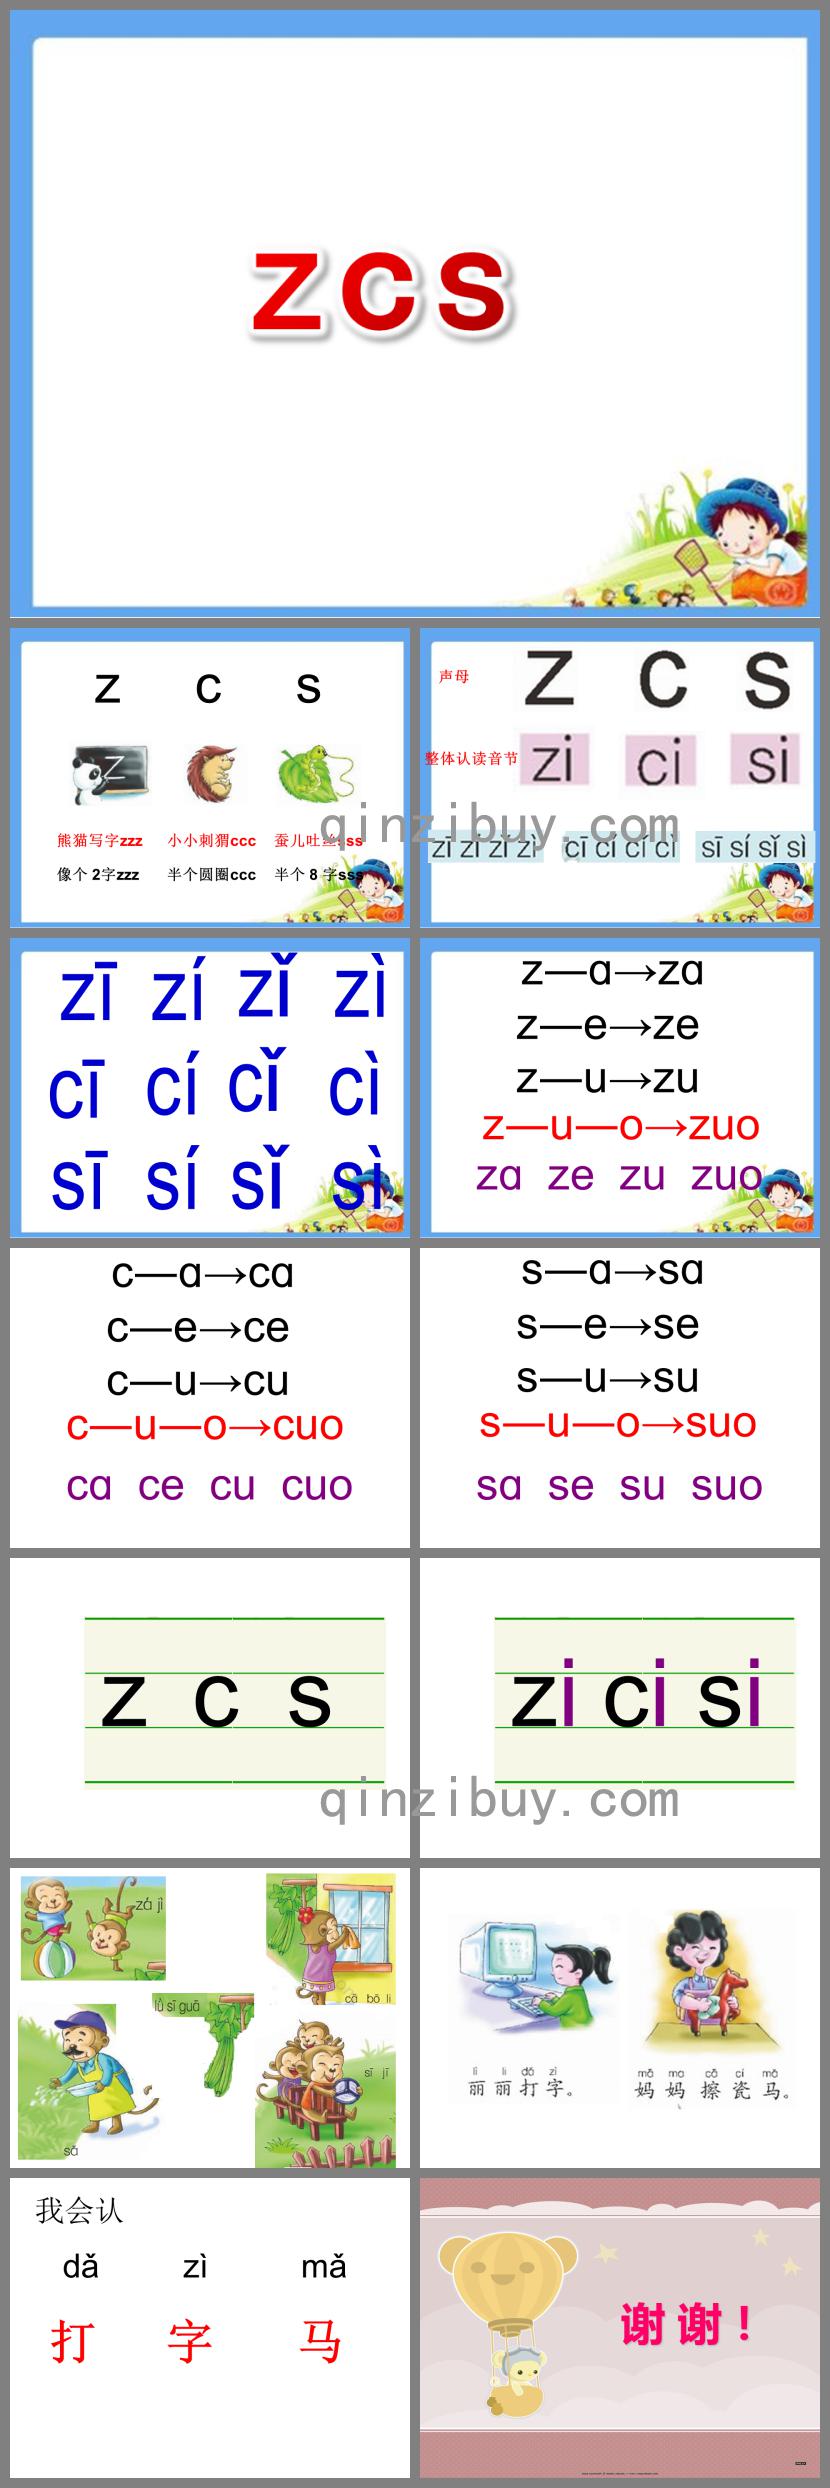 幼儿园拼音zcs的PPT课件